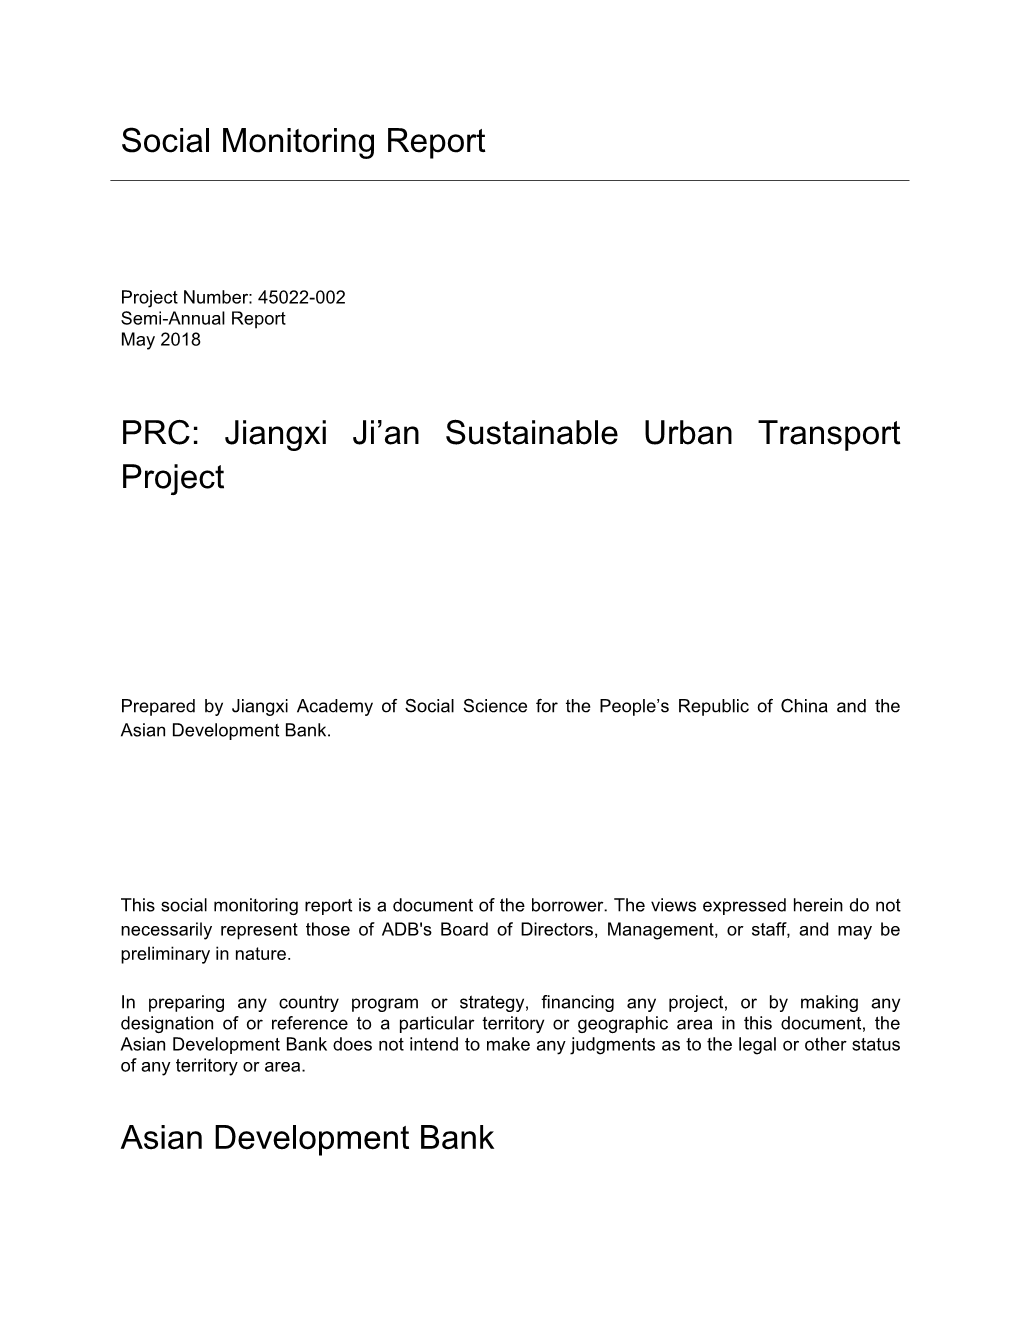 45022-002: Jiangxi Ji'an Sustainable Urban Transport Project